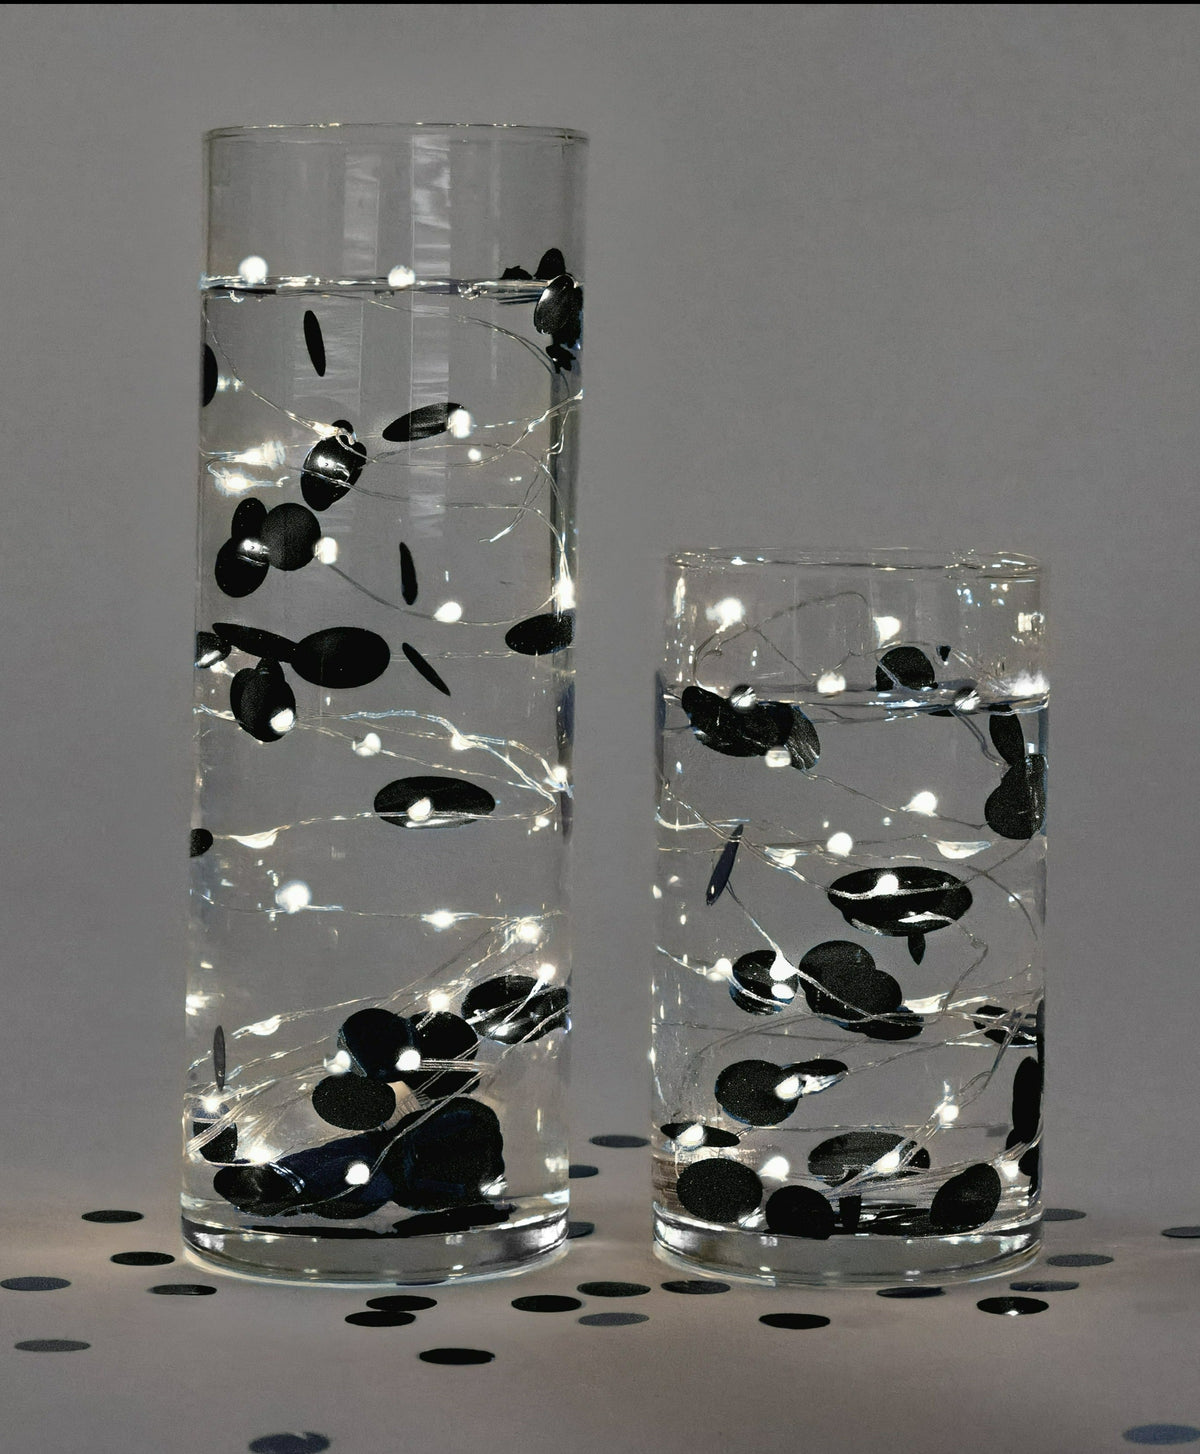 Confeti negro metálico "flotante" con opción de luces de hadas - Decoraciones de jarrones y esparcimiento de mesa